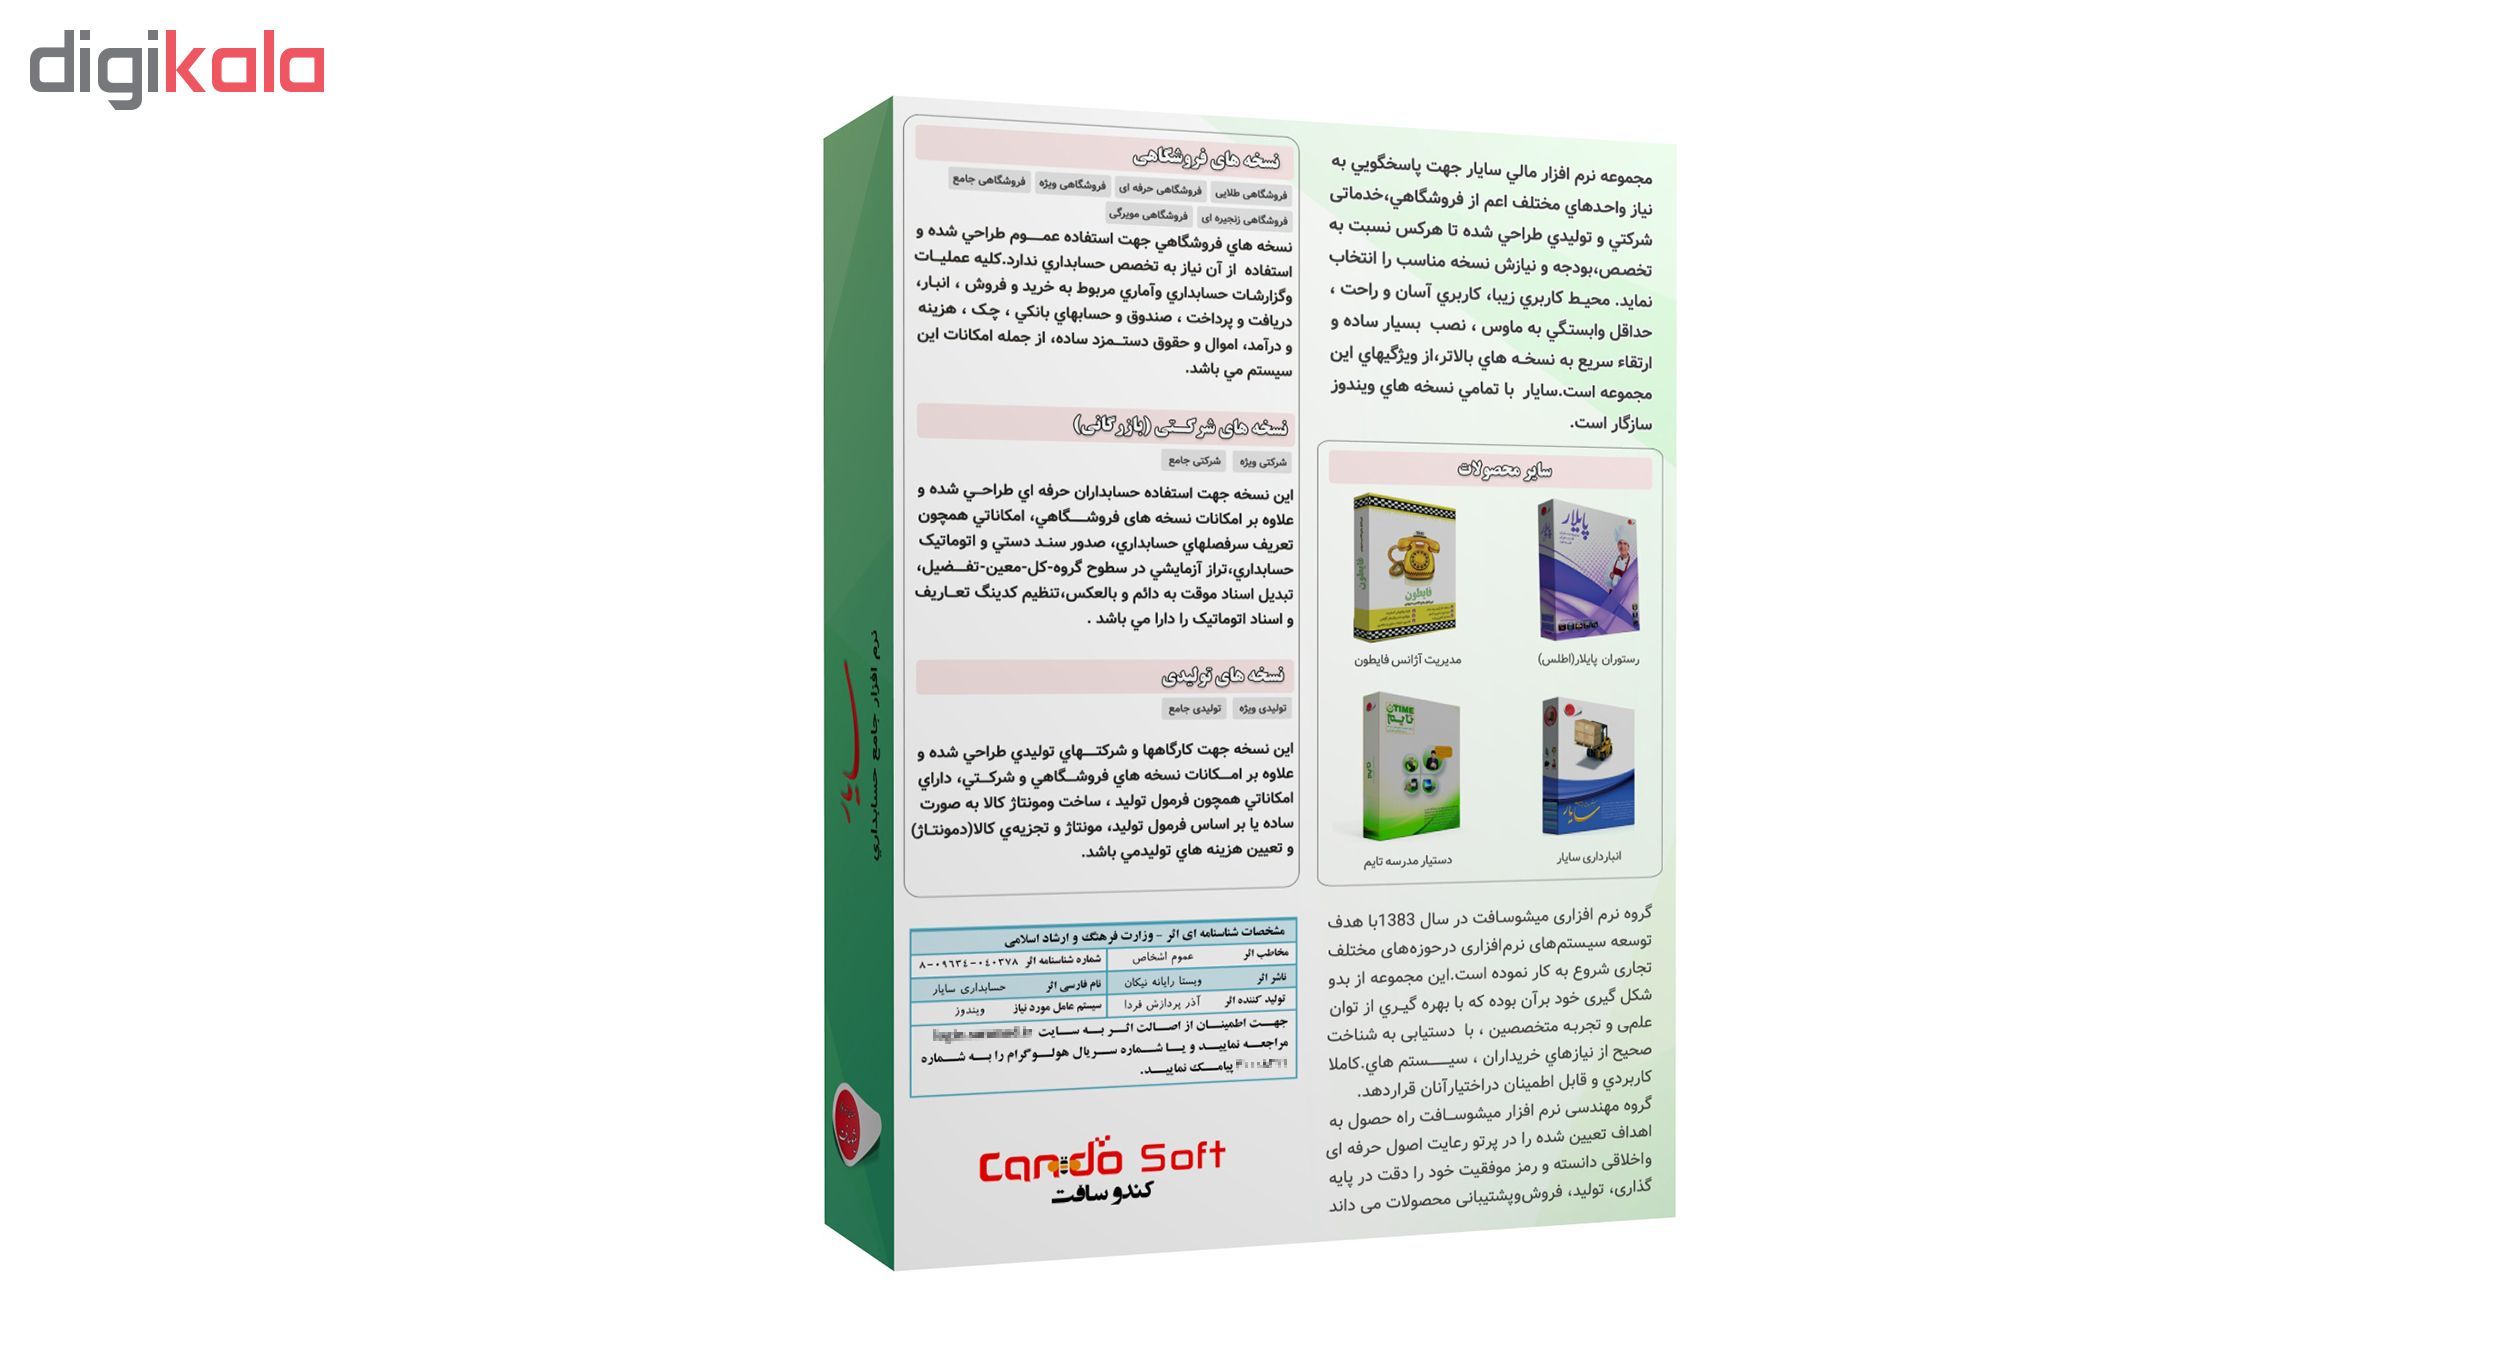 نرم افزار حسابداری سایار نسخه فروشگاهی ویژه نشر کندوسافت